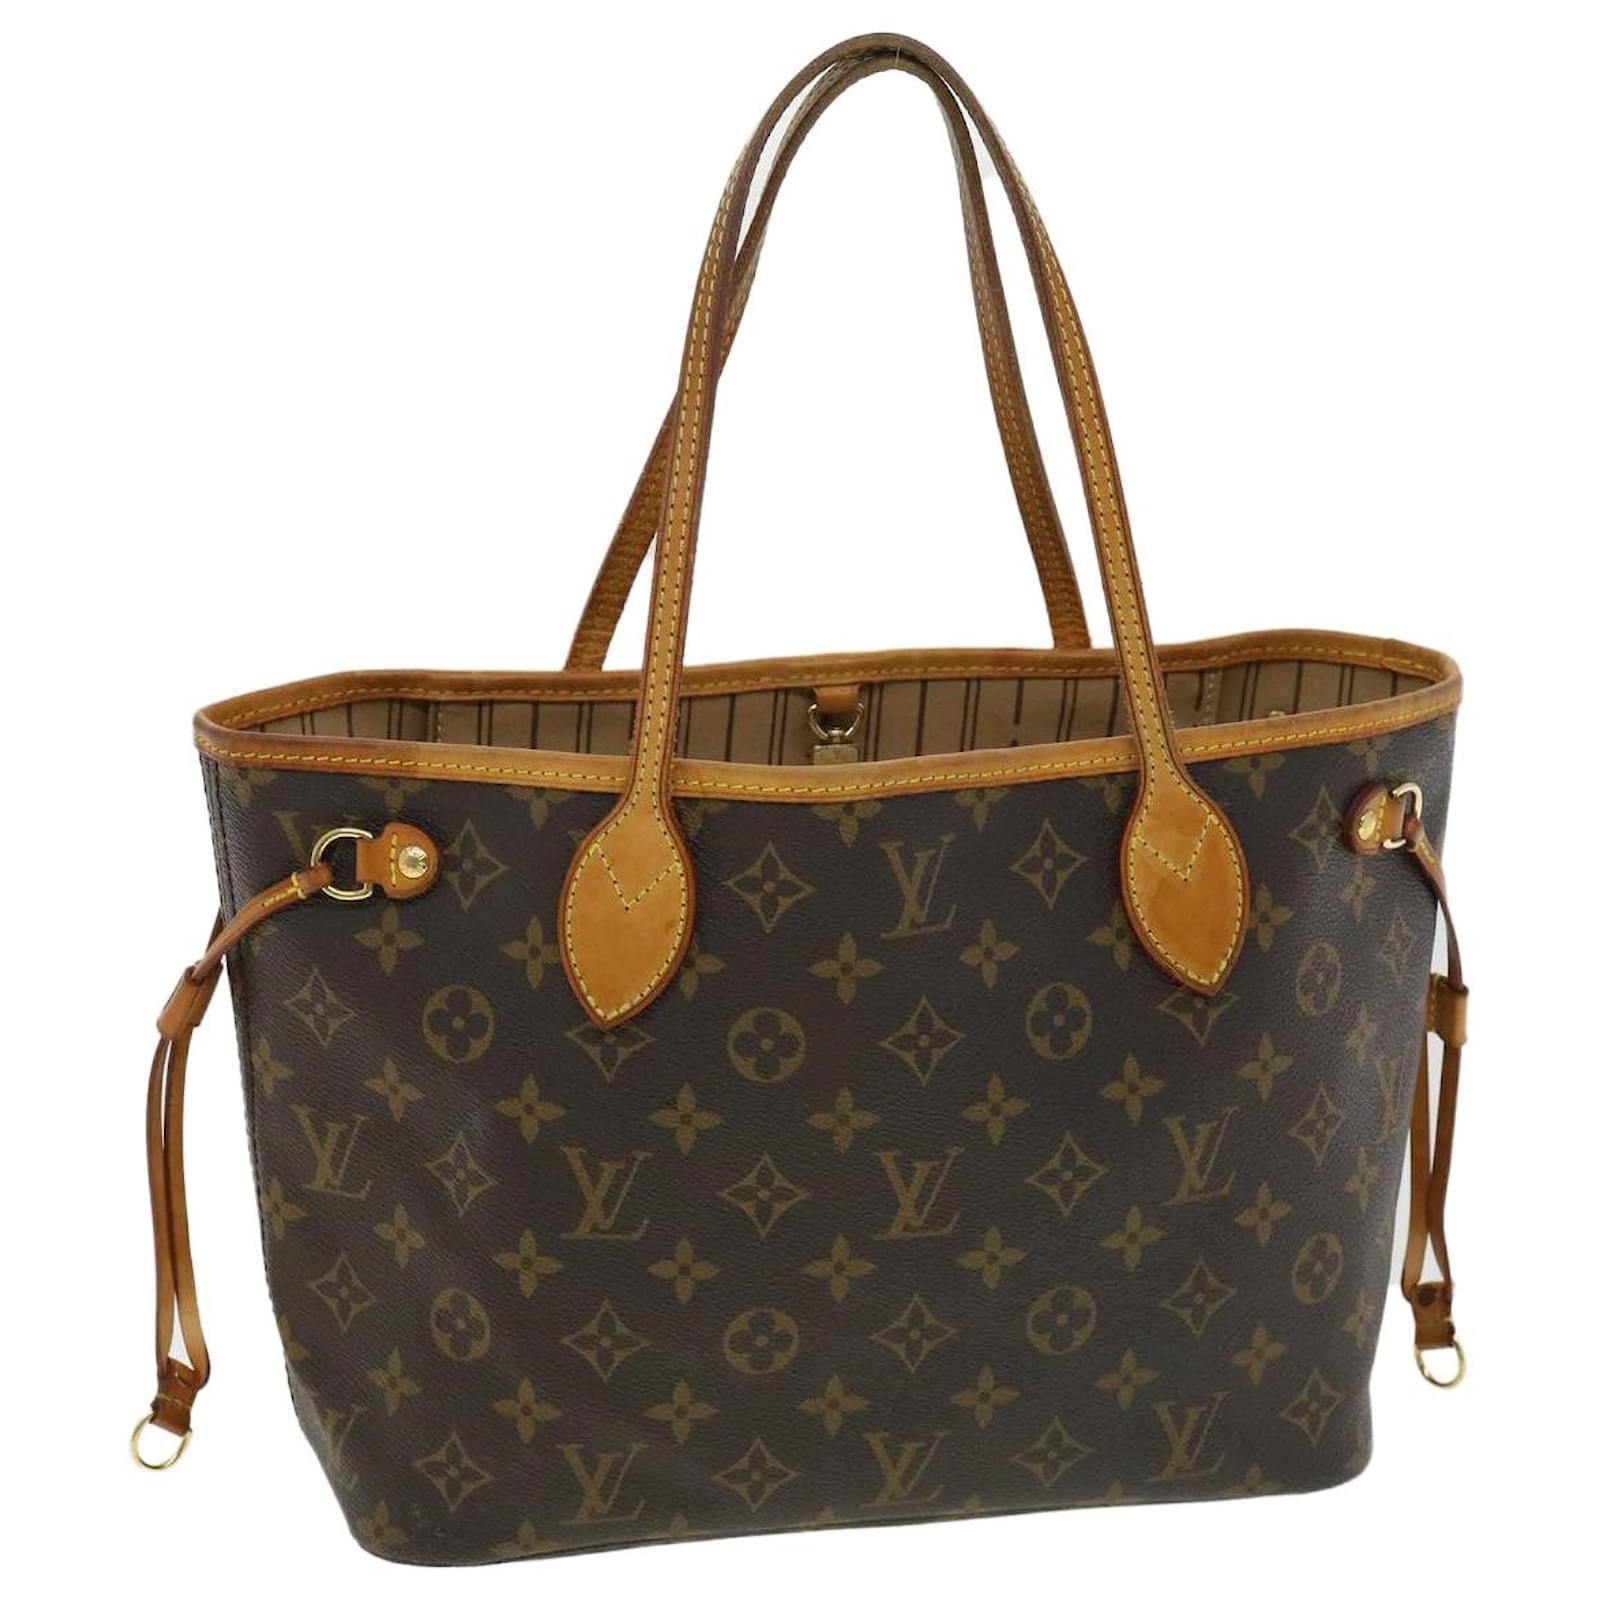 Louis Vuitton Monogram Neverfull PM Handbag Tote Bag M41245 Brown